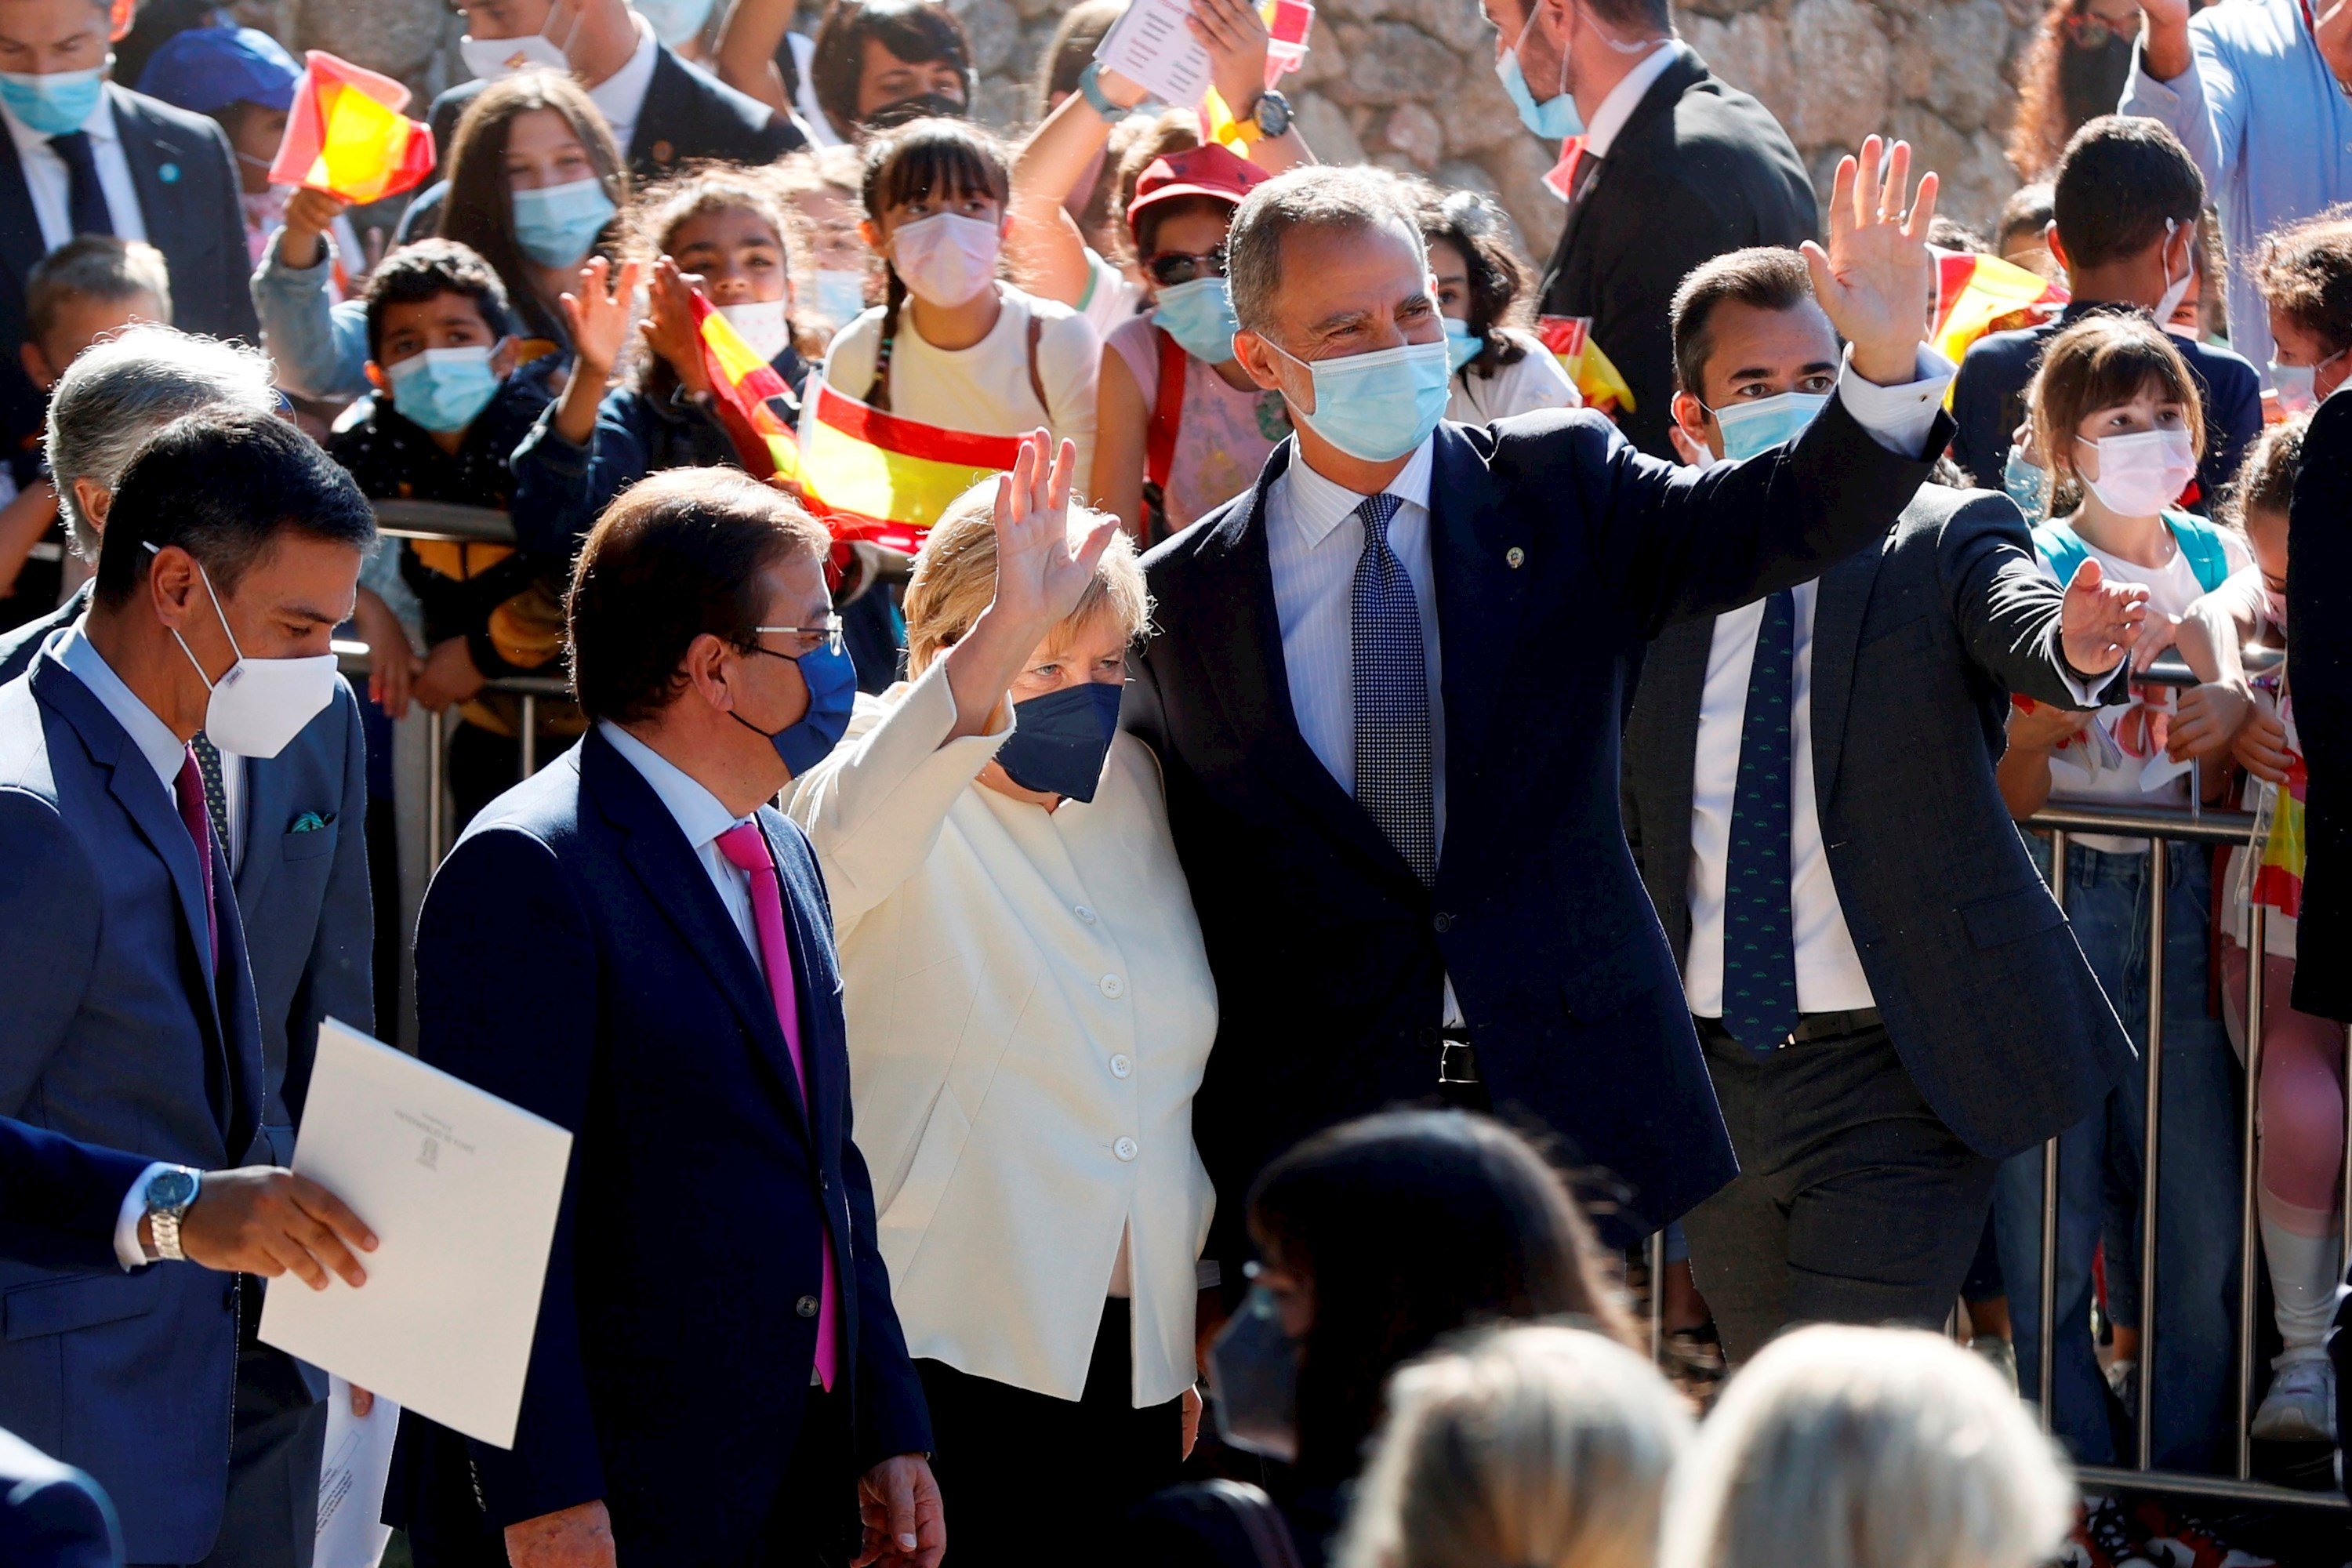 Ambiente, Angela Merkel con el rey Felipe VI, entrega premios Carlos V, Cuacos de Yuste, Cáceres - Efe